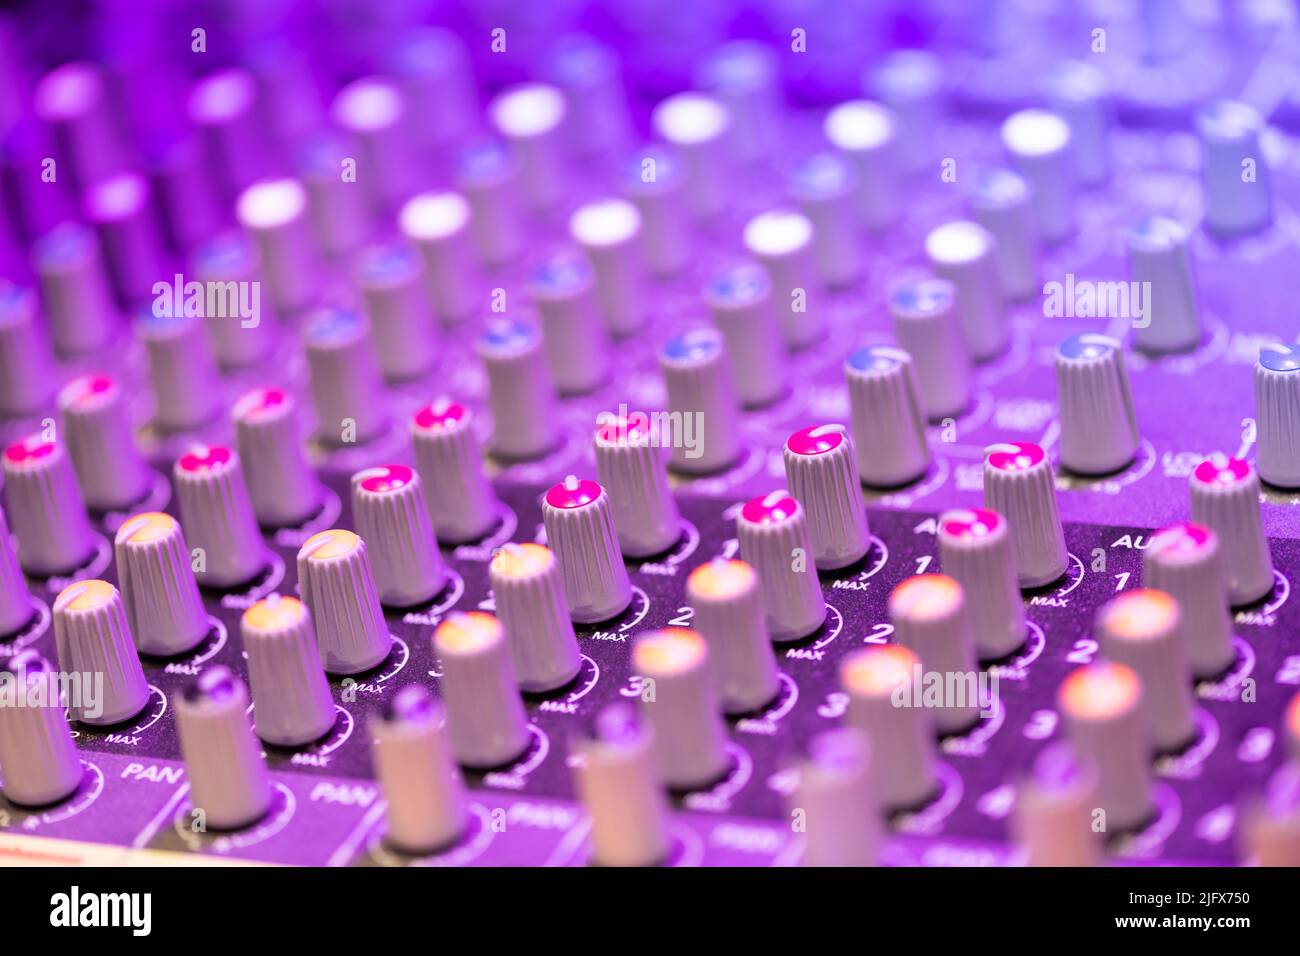 Detalle de un panel de control del mezclador de música con mandos acústicos de fila para ajustar los canales en un concepto de entretenimiento Foto de stock